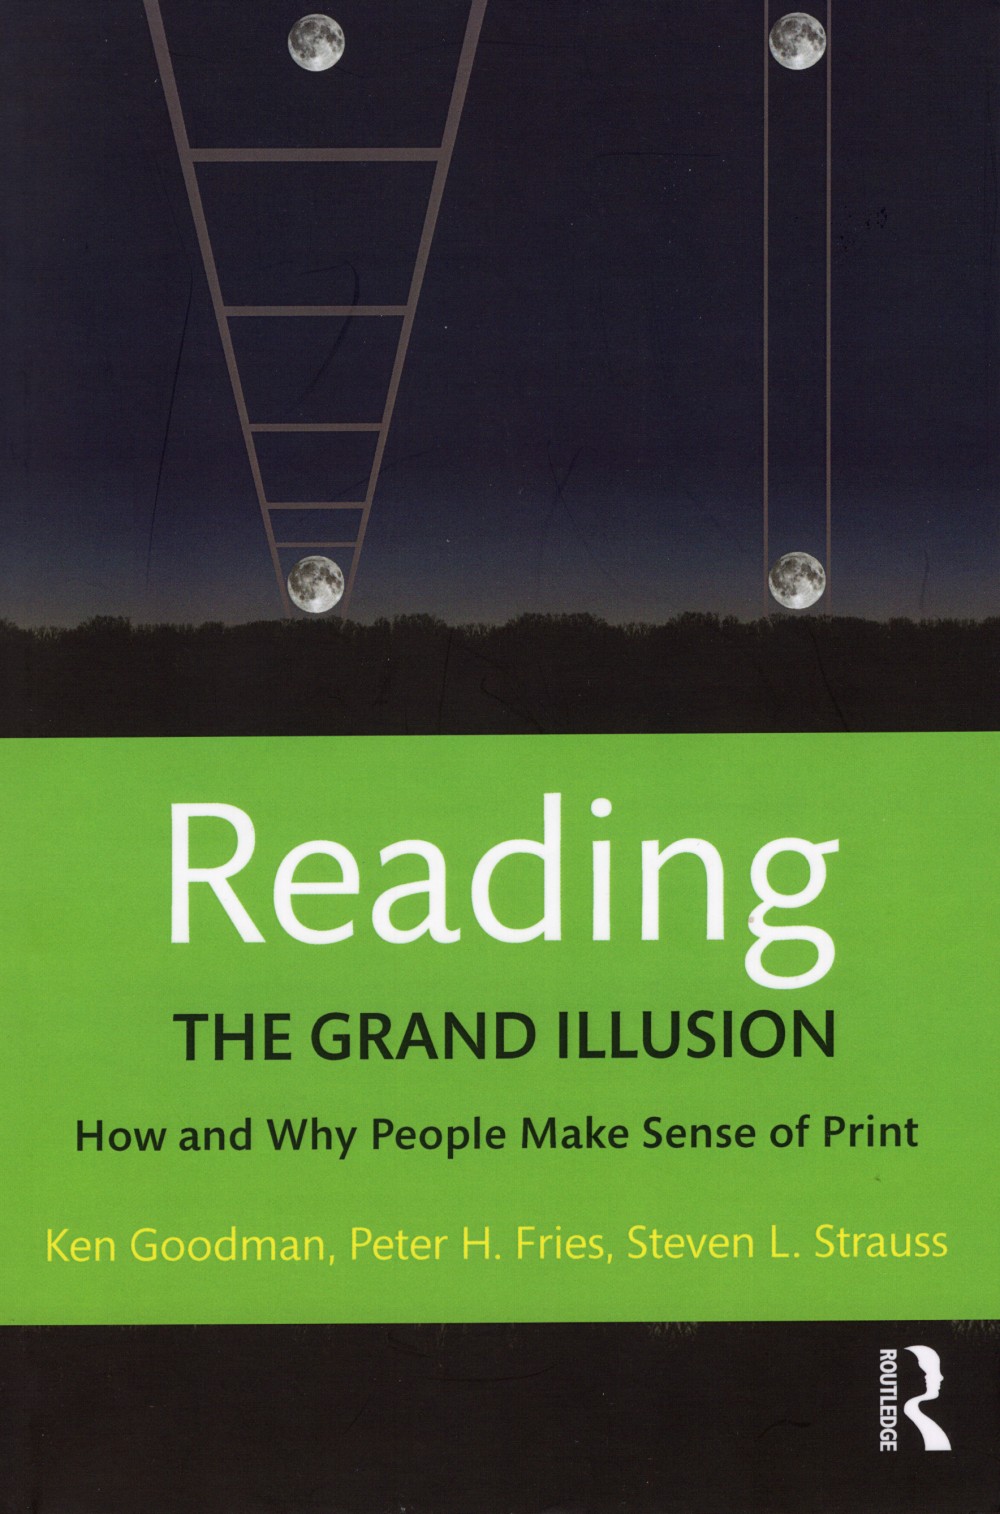 [The Grand Illusion]